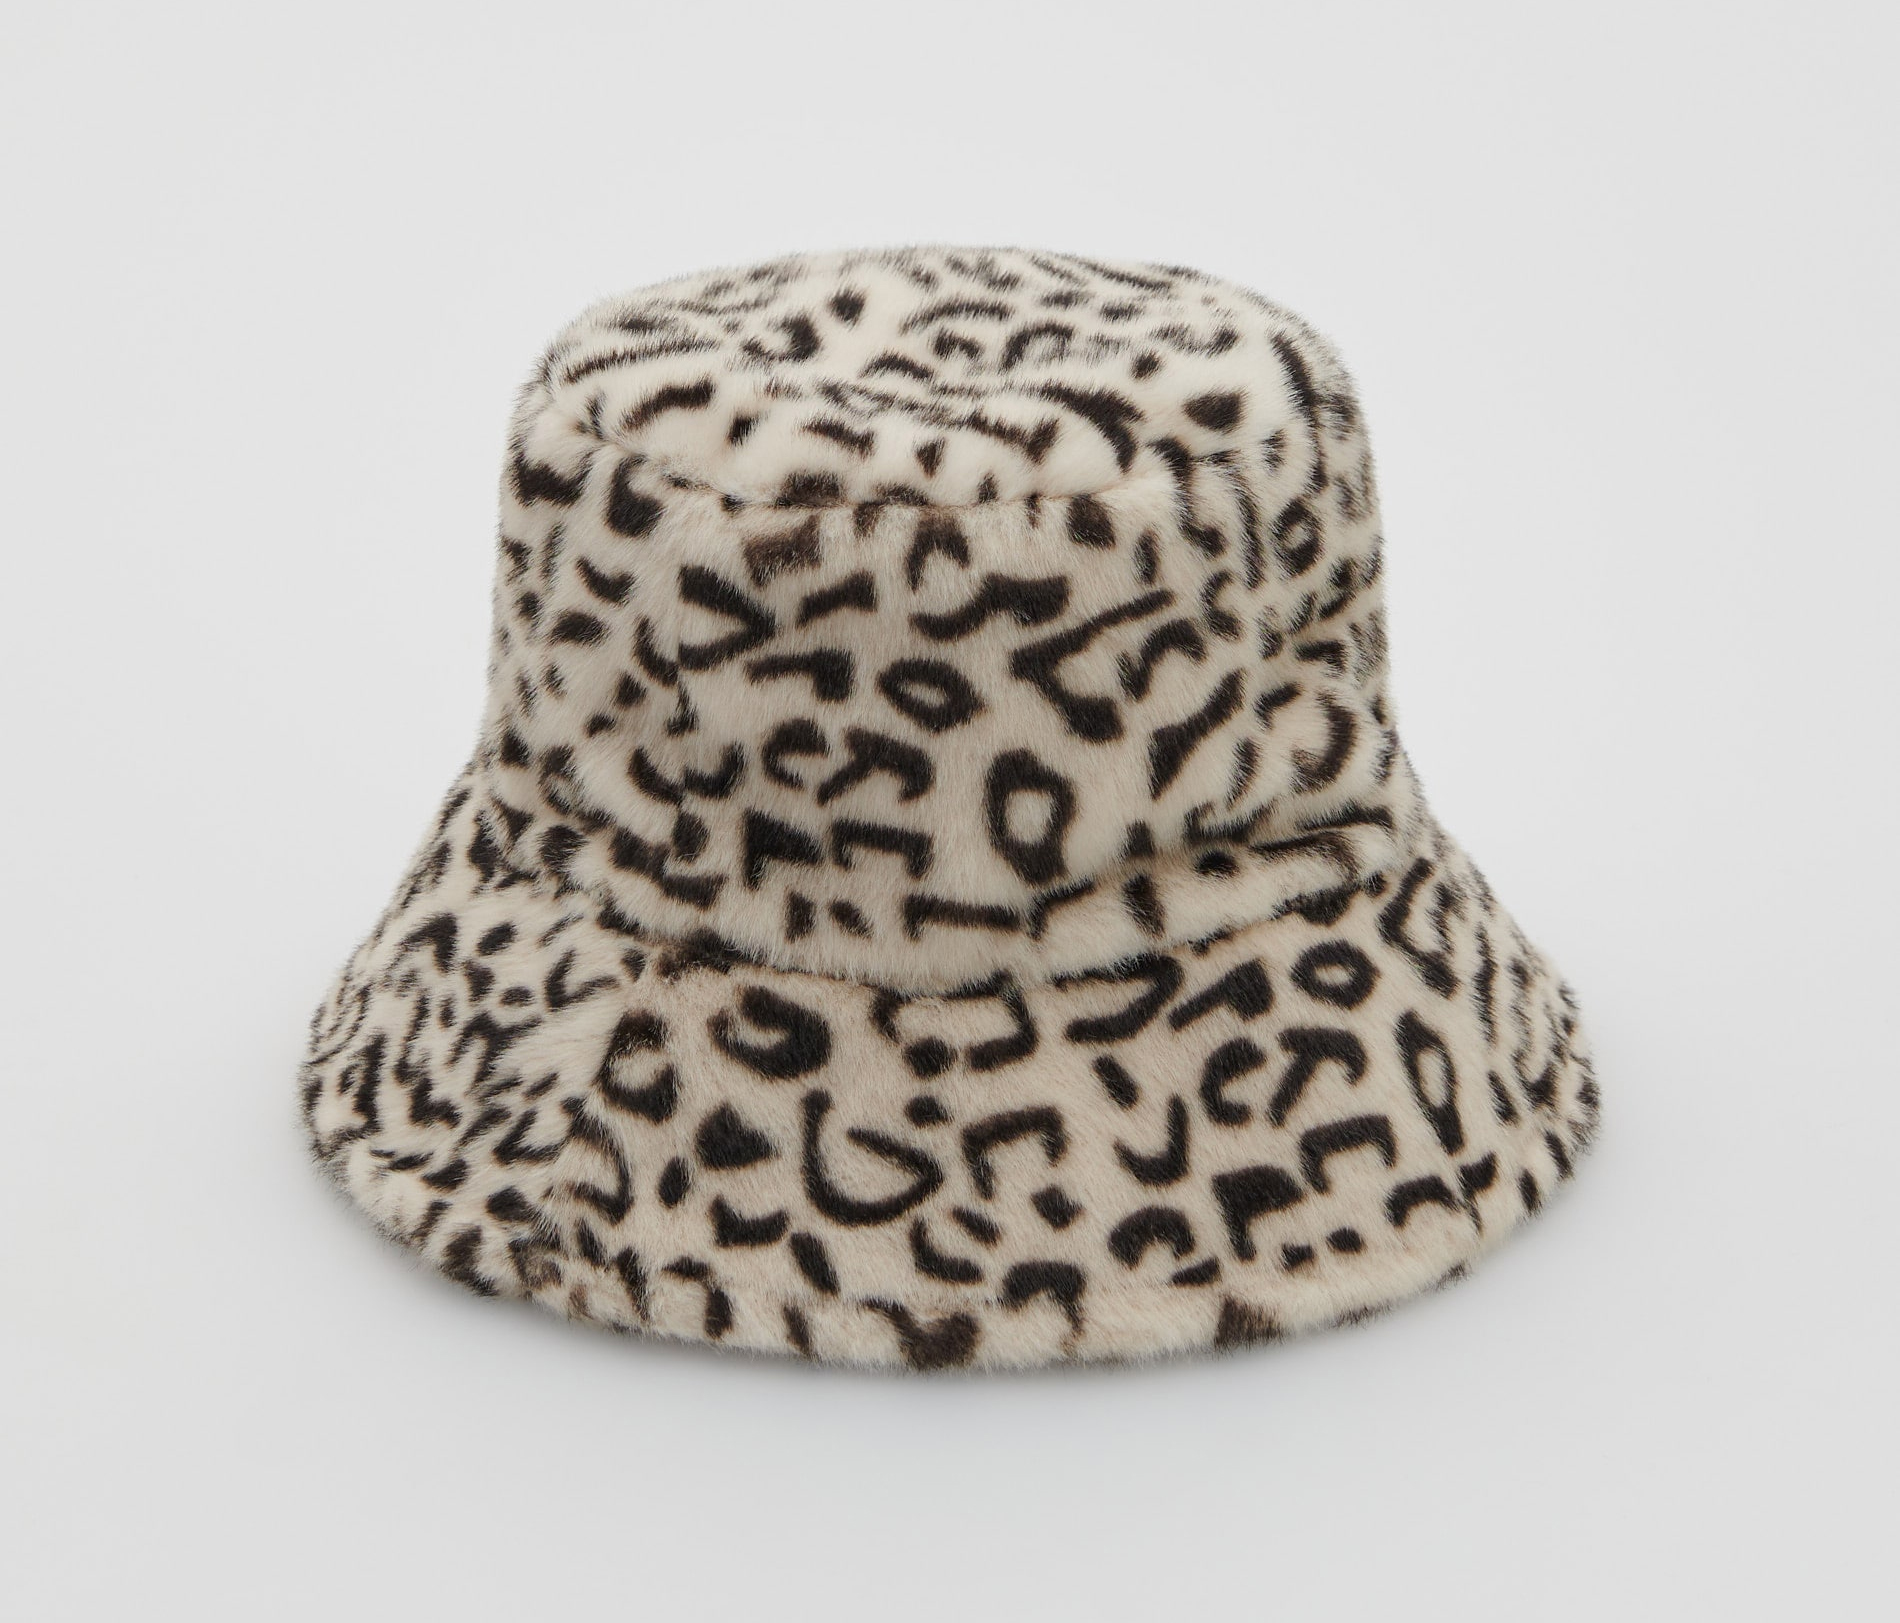 модный головной убор зима 2021 2022 теплое на голову шапка панама мех чернаябелая принт леопард